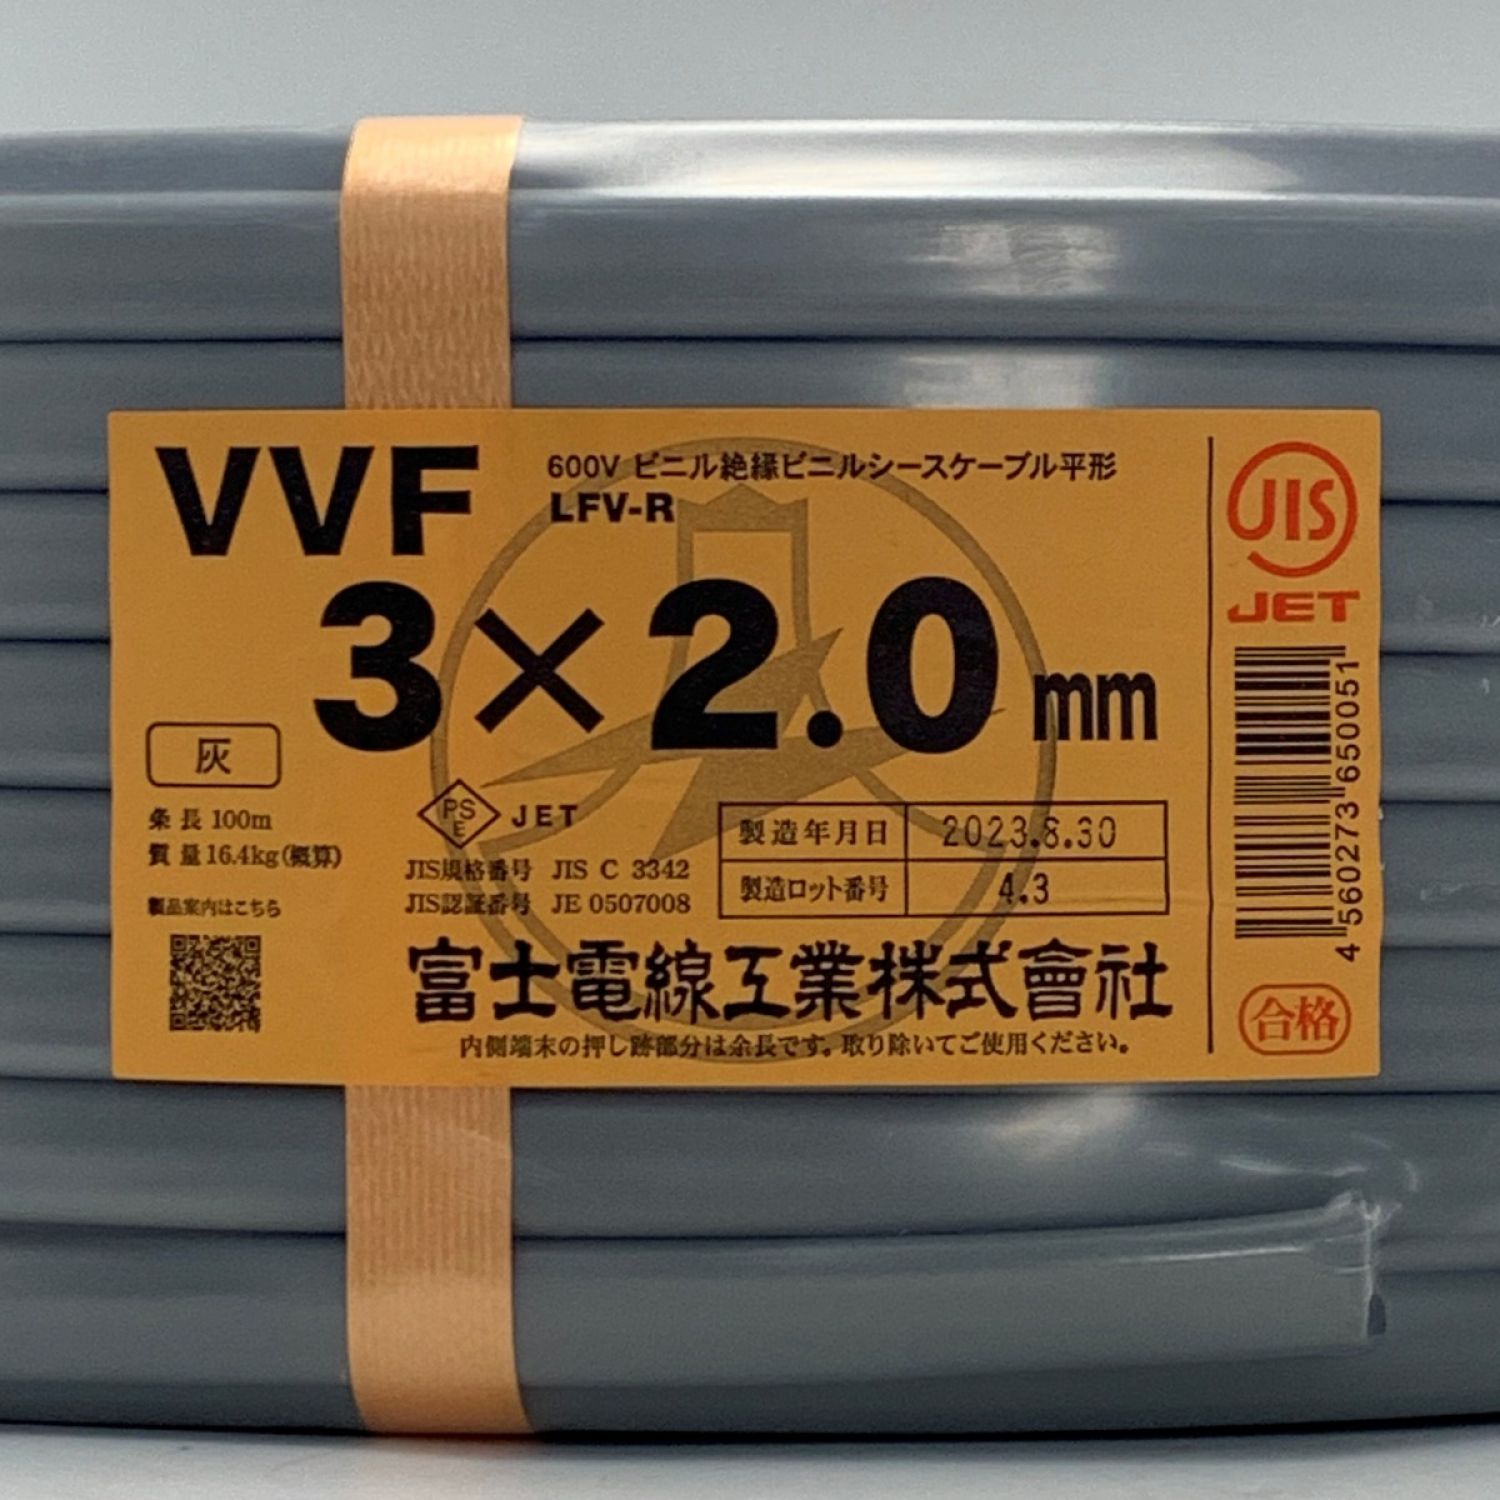 富士電線工業(FUJI ELECTRIC WIRE) 《 VVFケーブル 平形 》100m巻 / 灰色 / VVF3×2.0 Sランク